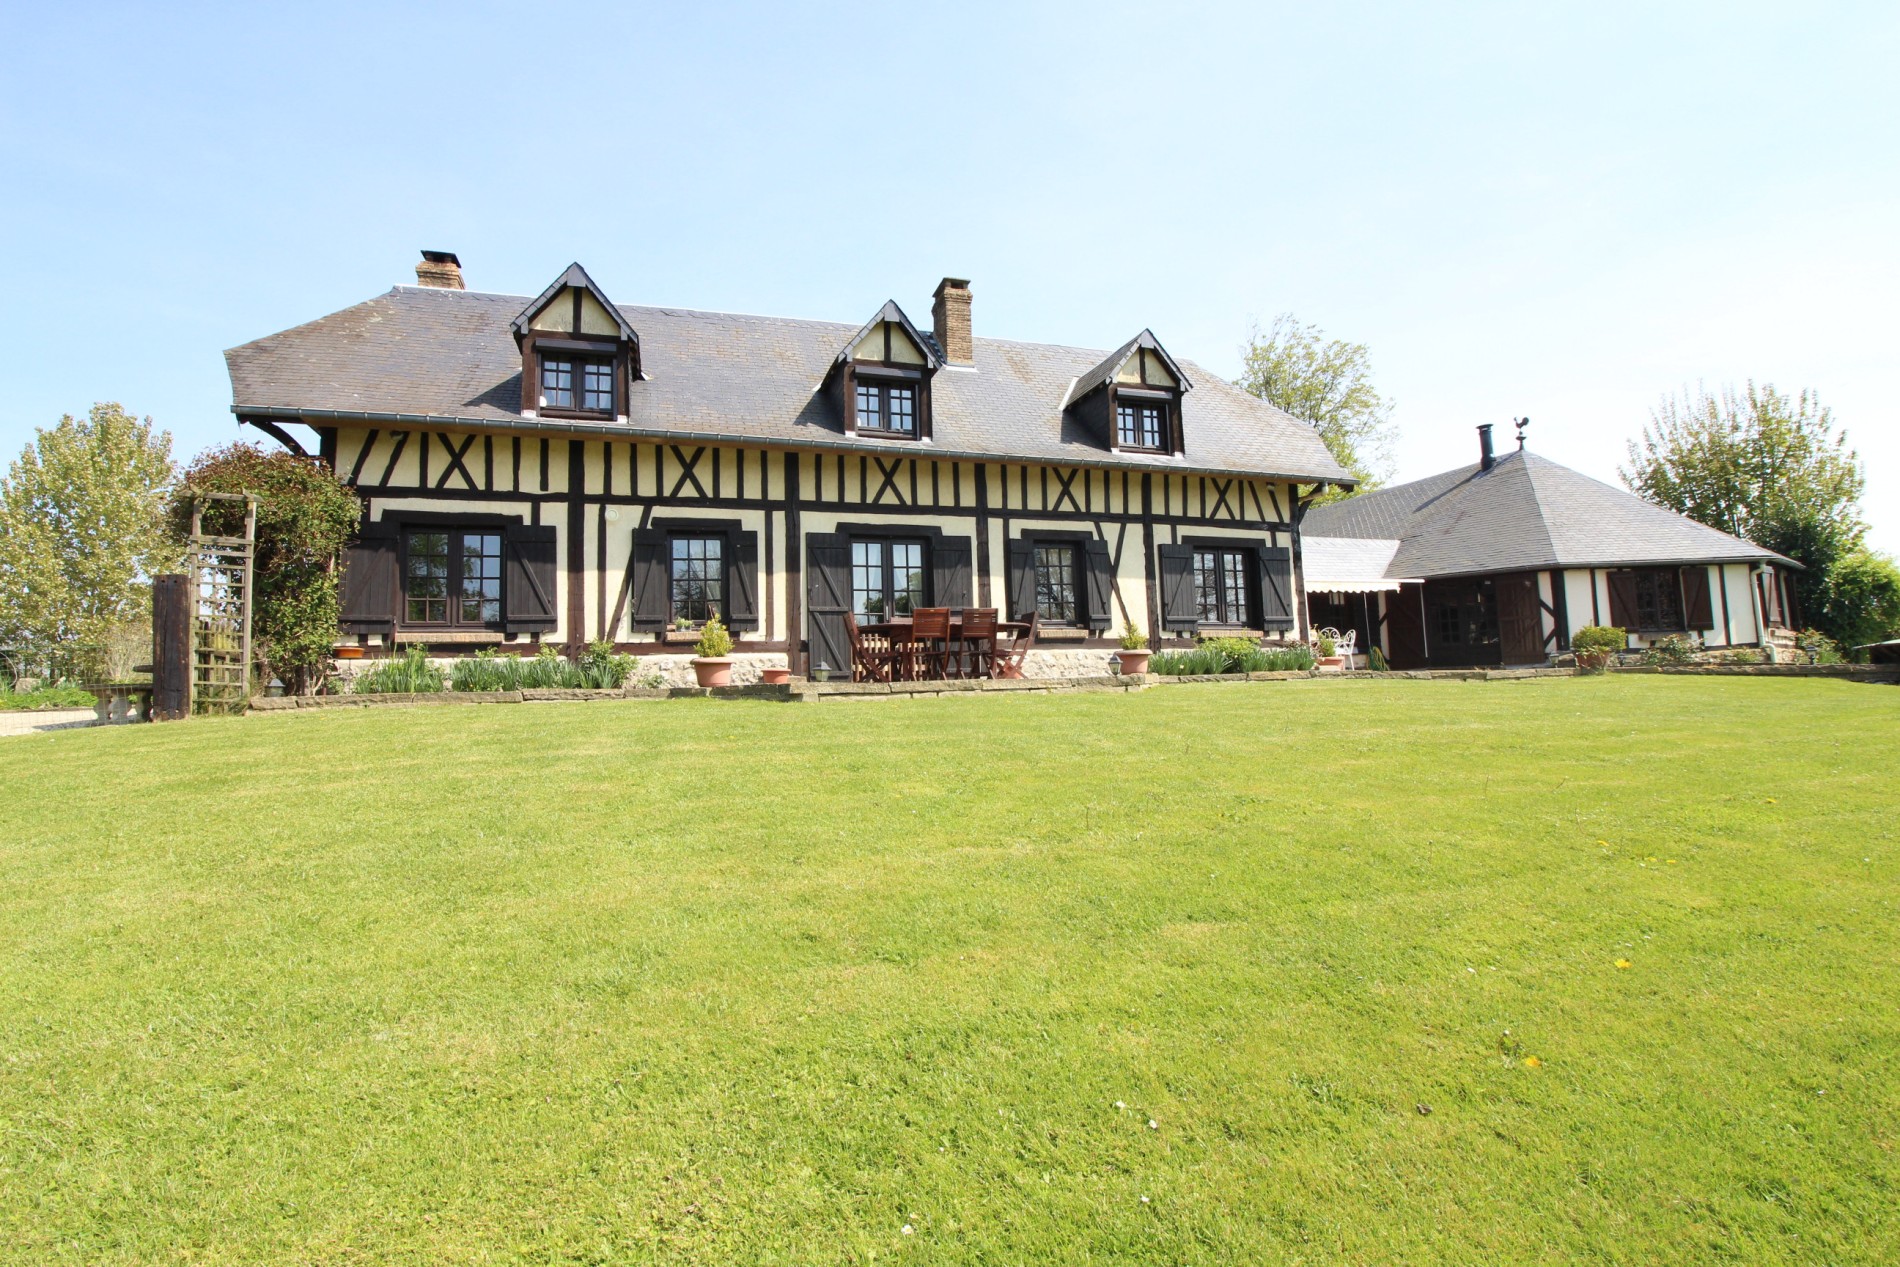 Maison normande à acheter Entre Caudebec en Caux, Yvetot, Lillebonne, Normandie, Pays de Caux